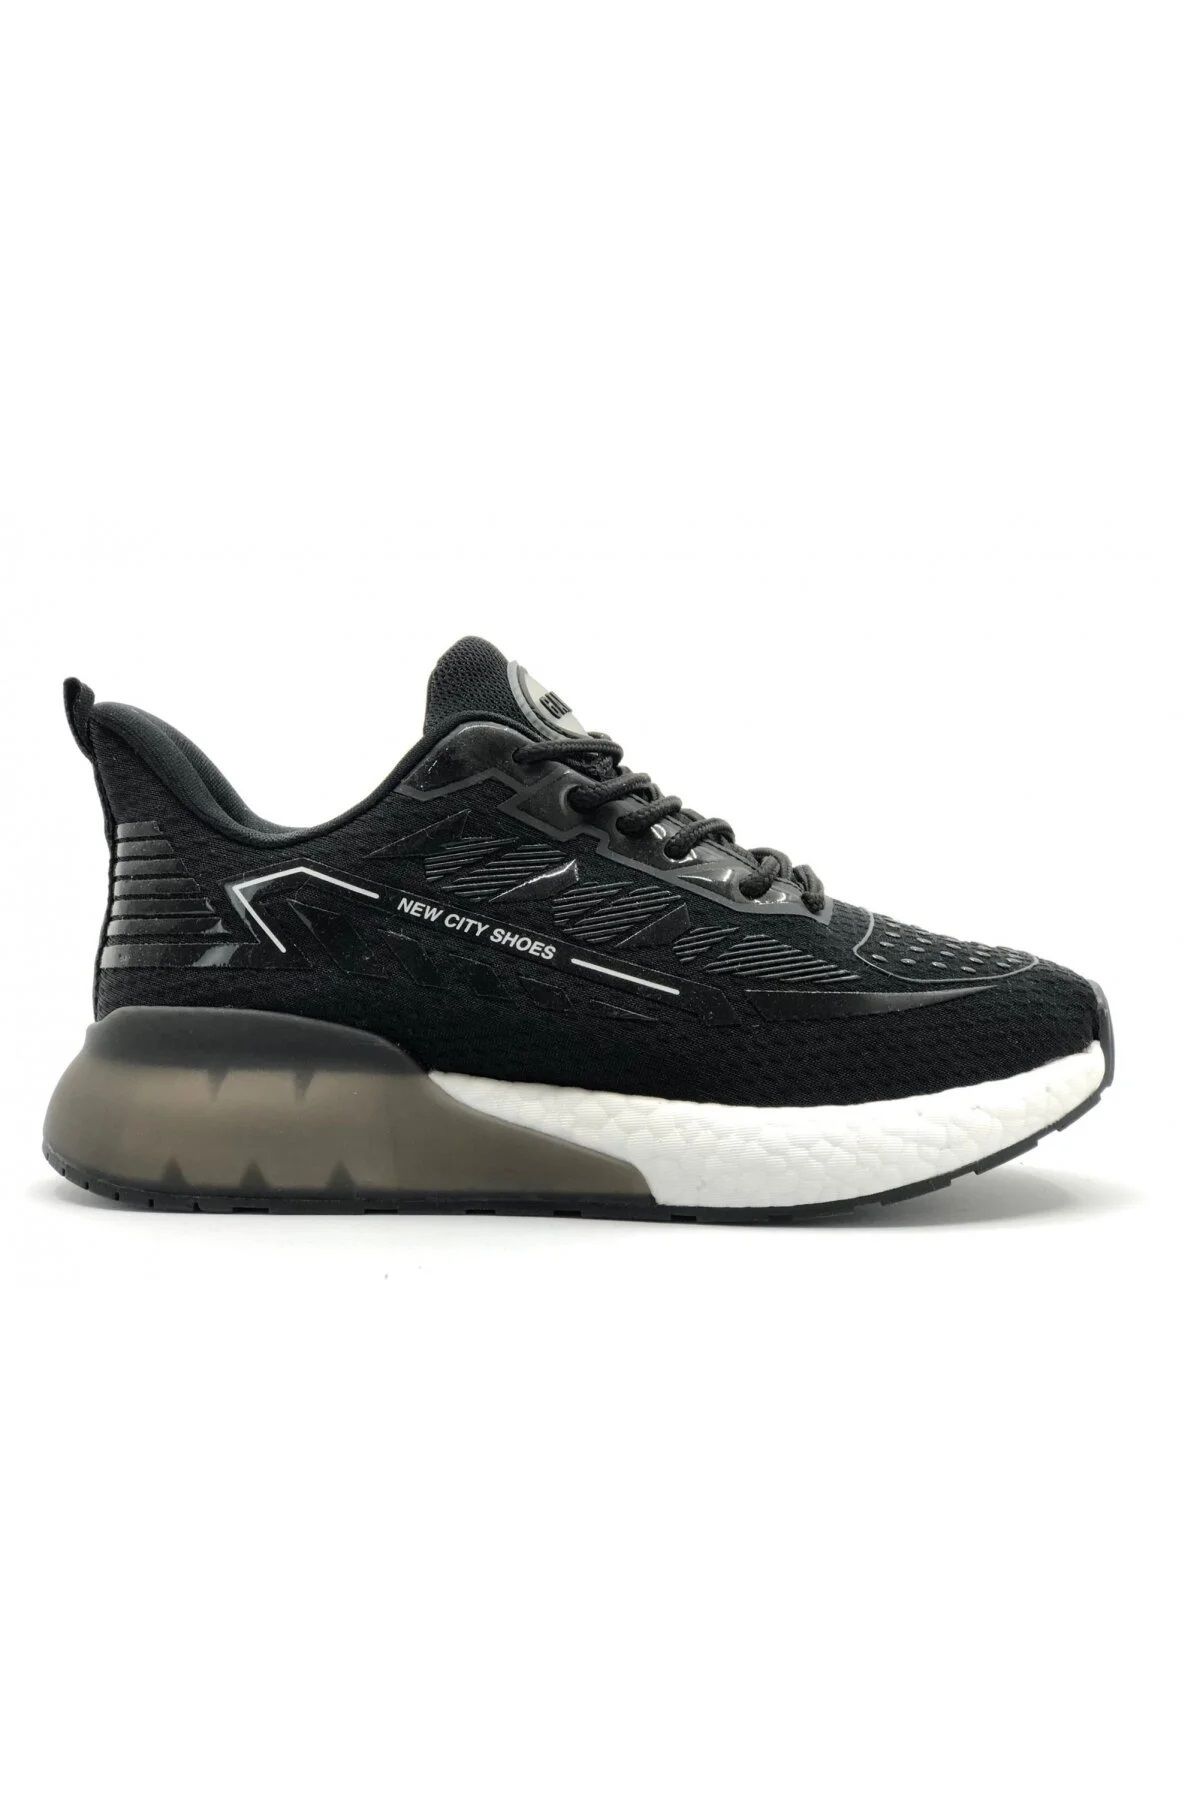 GAMELU Nice Erkek Siyah Beyaz Tarz Memory Foam Air Bosth Yürüyüş Sneaker Spor Ayakkabısı